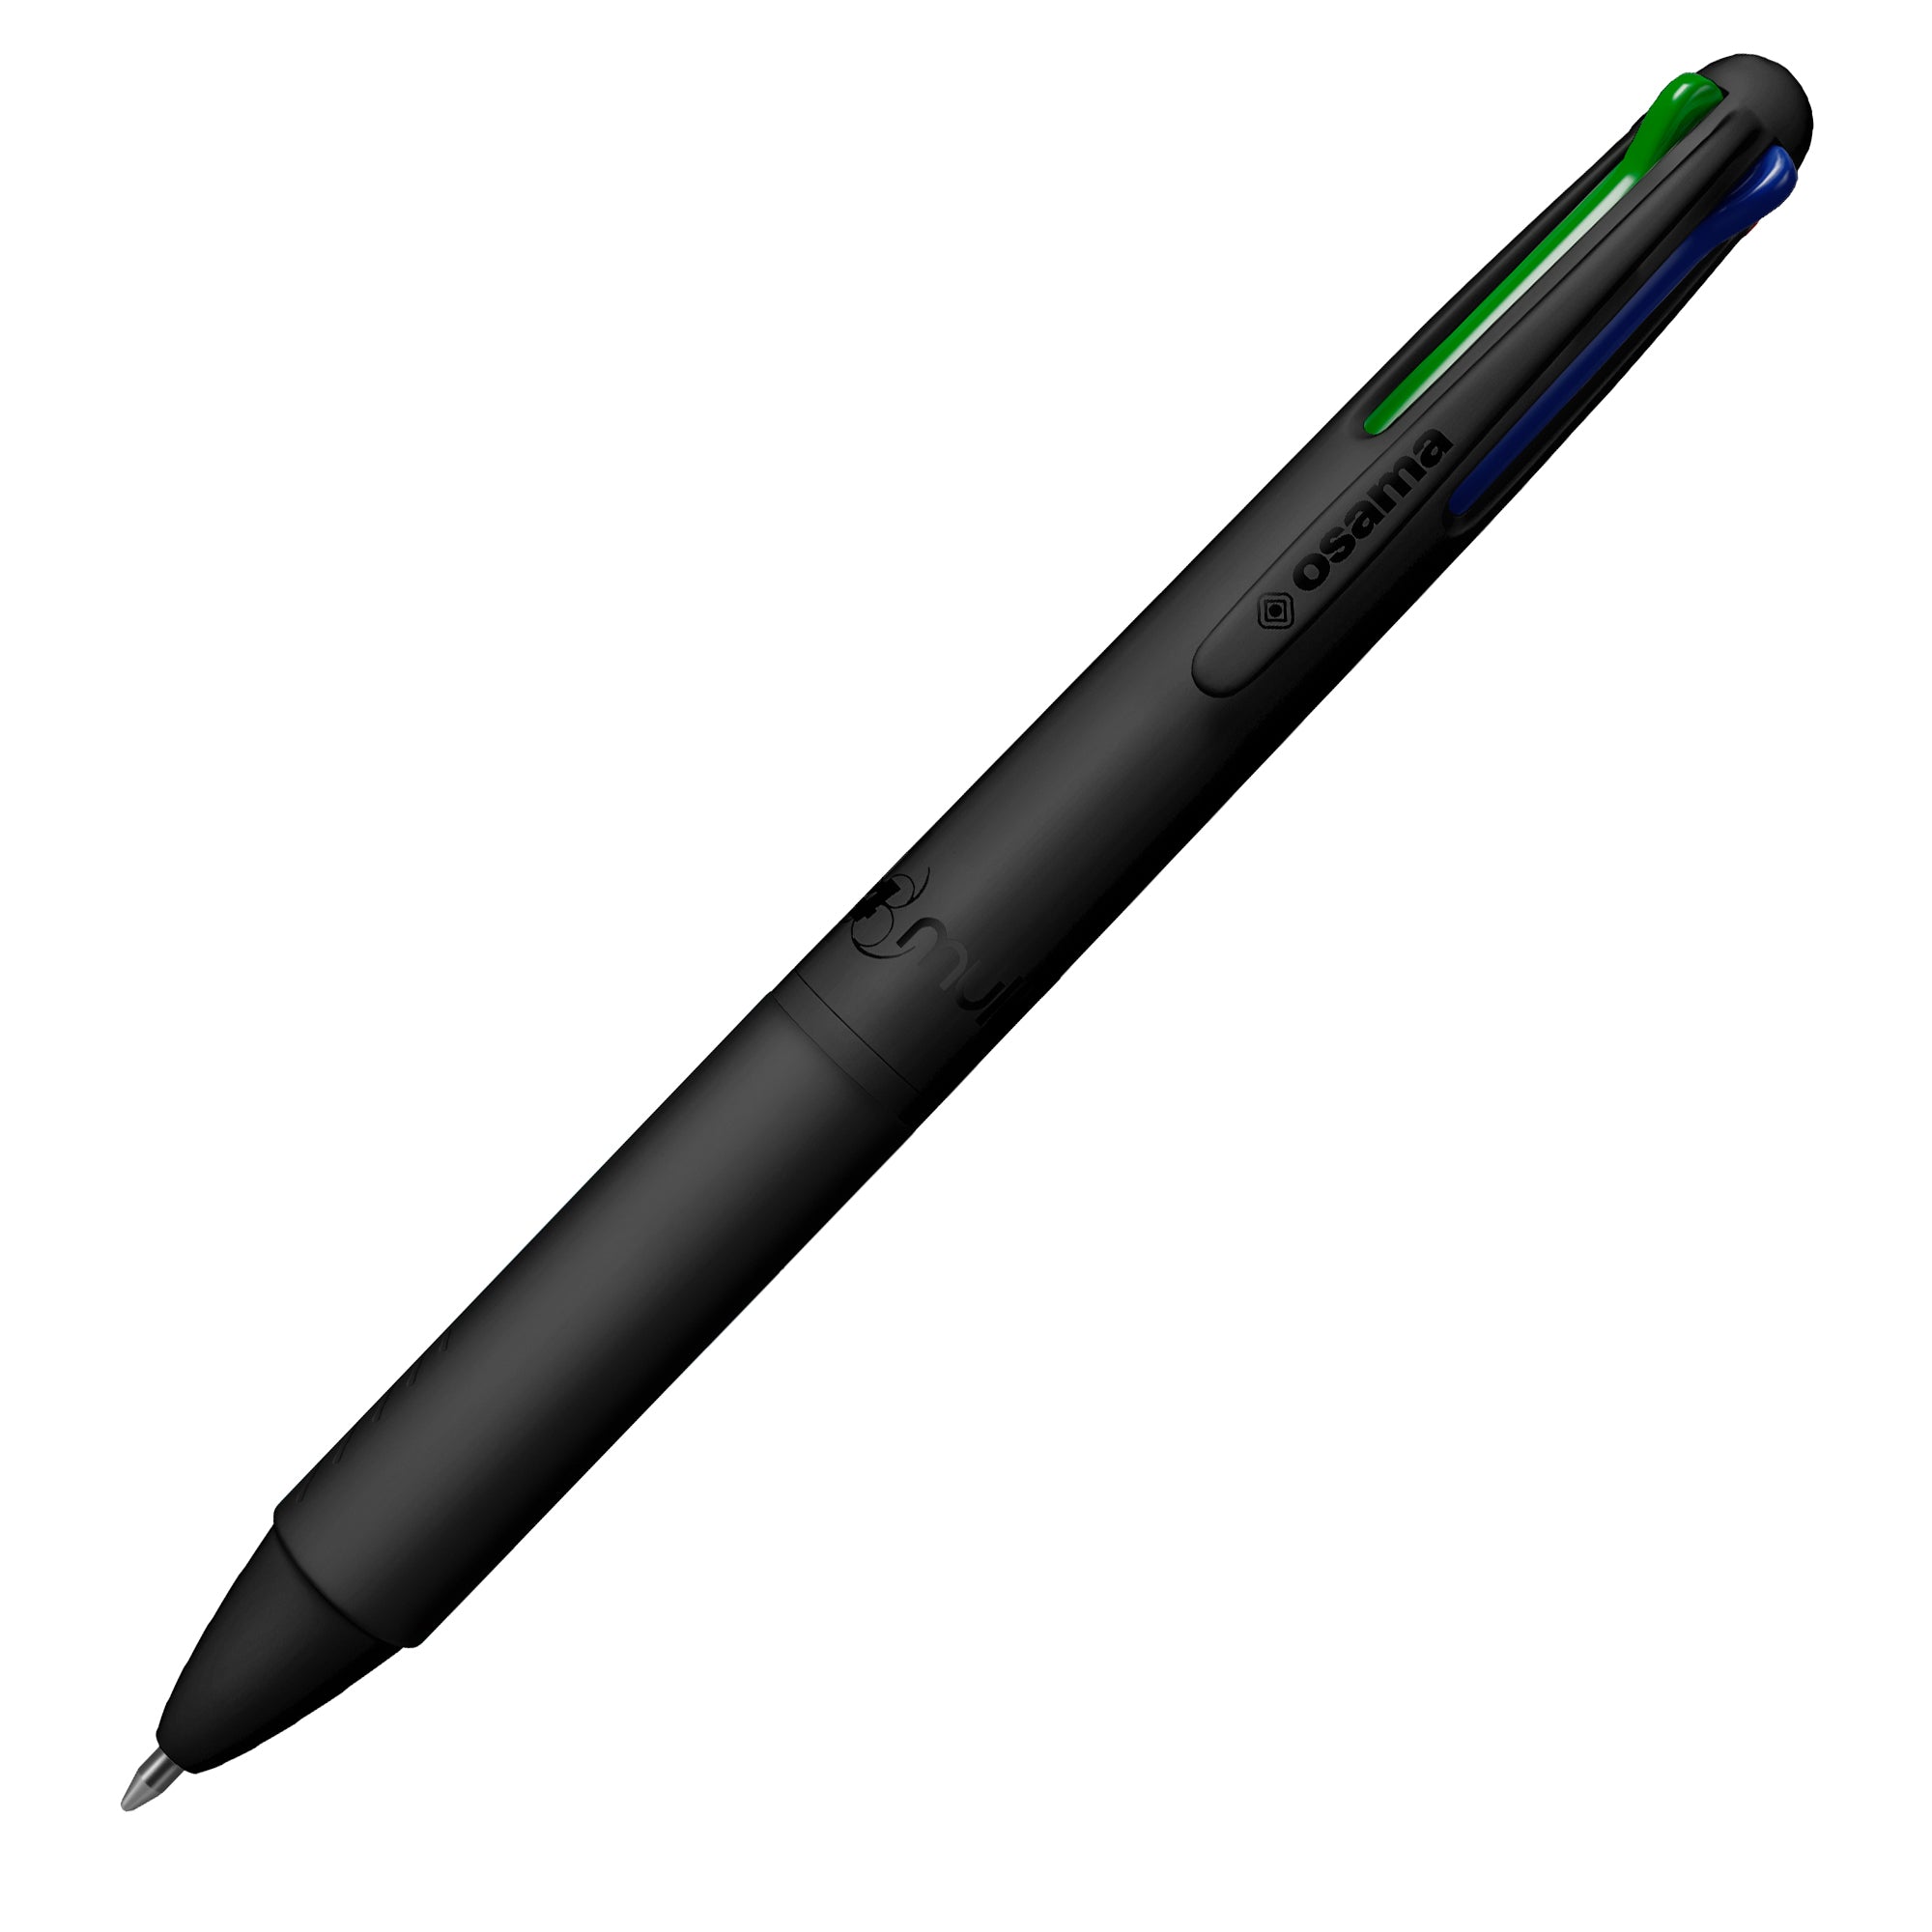 osama-astuccio-6-penne-sfera-4-colori-multi-1-00mm-black